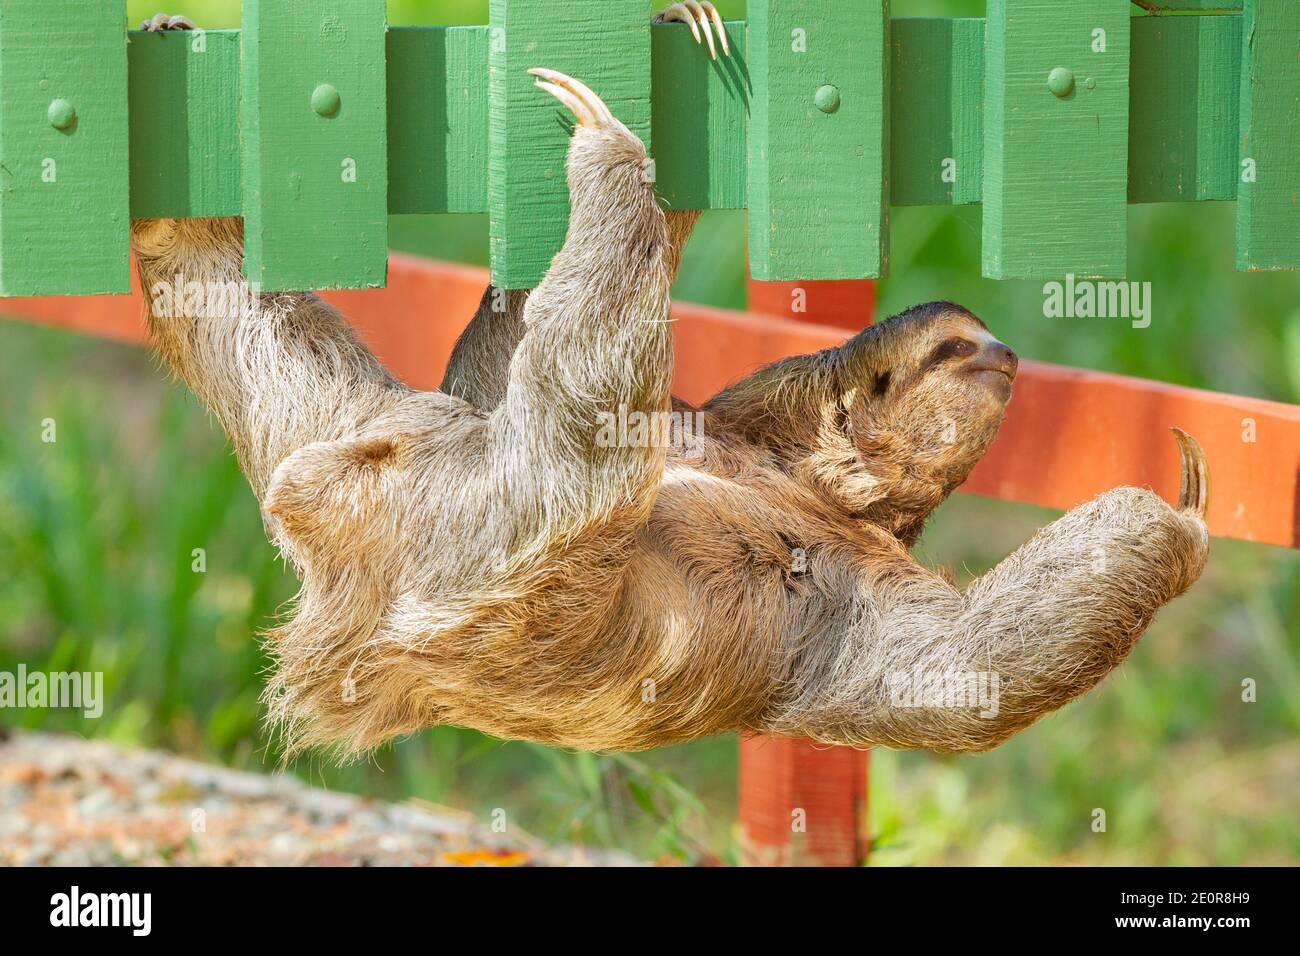 Sloth de tres dedos (Bradypus infuscatus) escalada a lo largo del fondo de una valla de madera Foto de stock